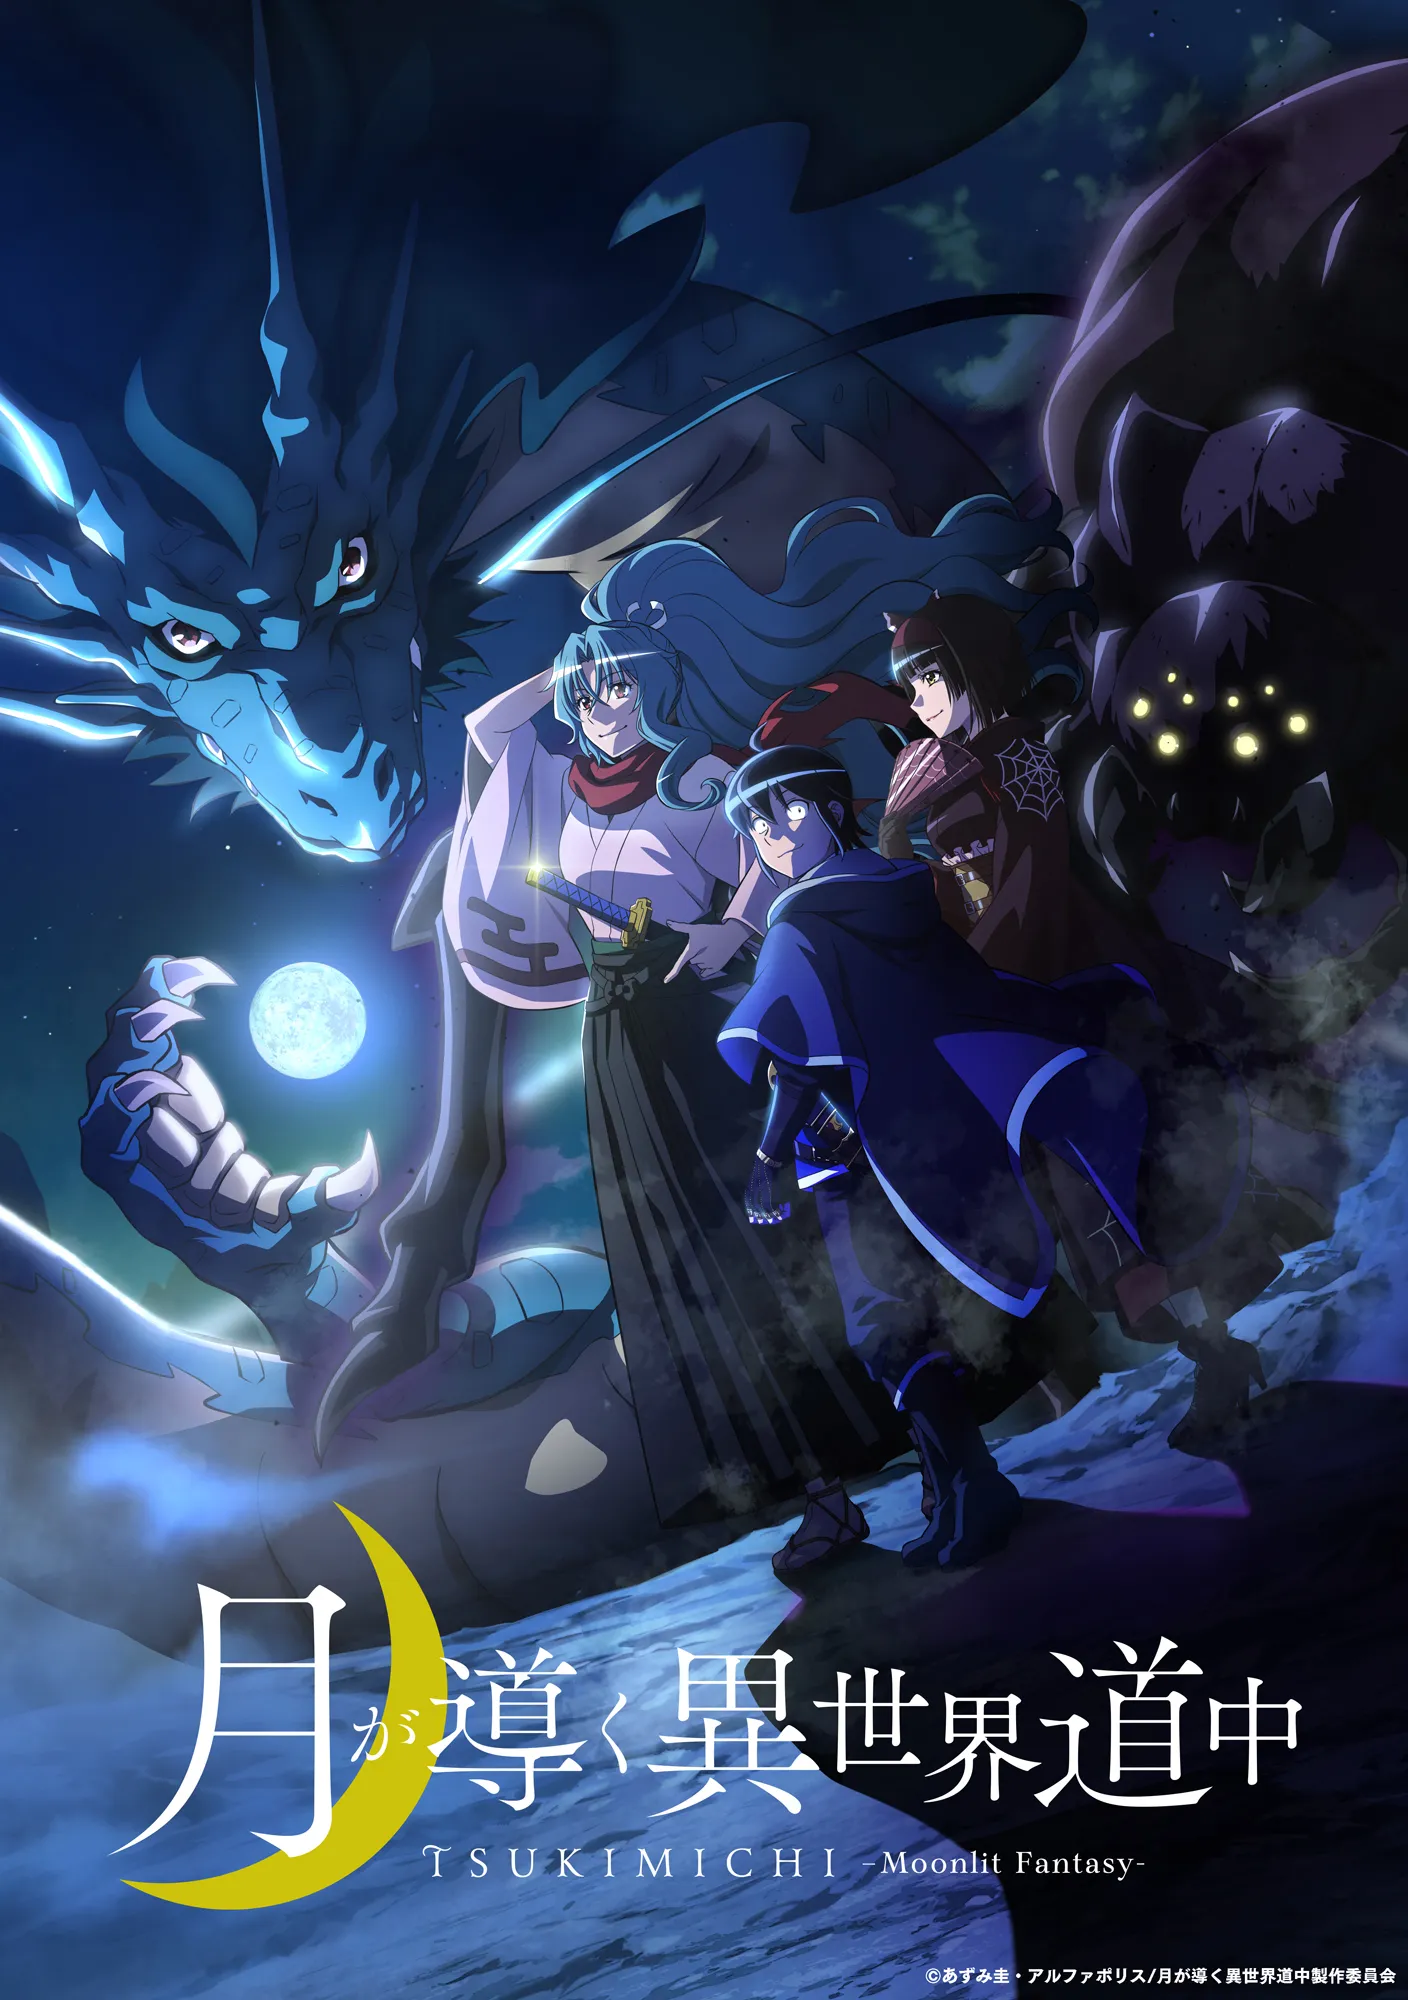 Isekai-2021-Tsukimichi-Moonlit-Fantasy